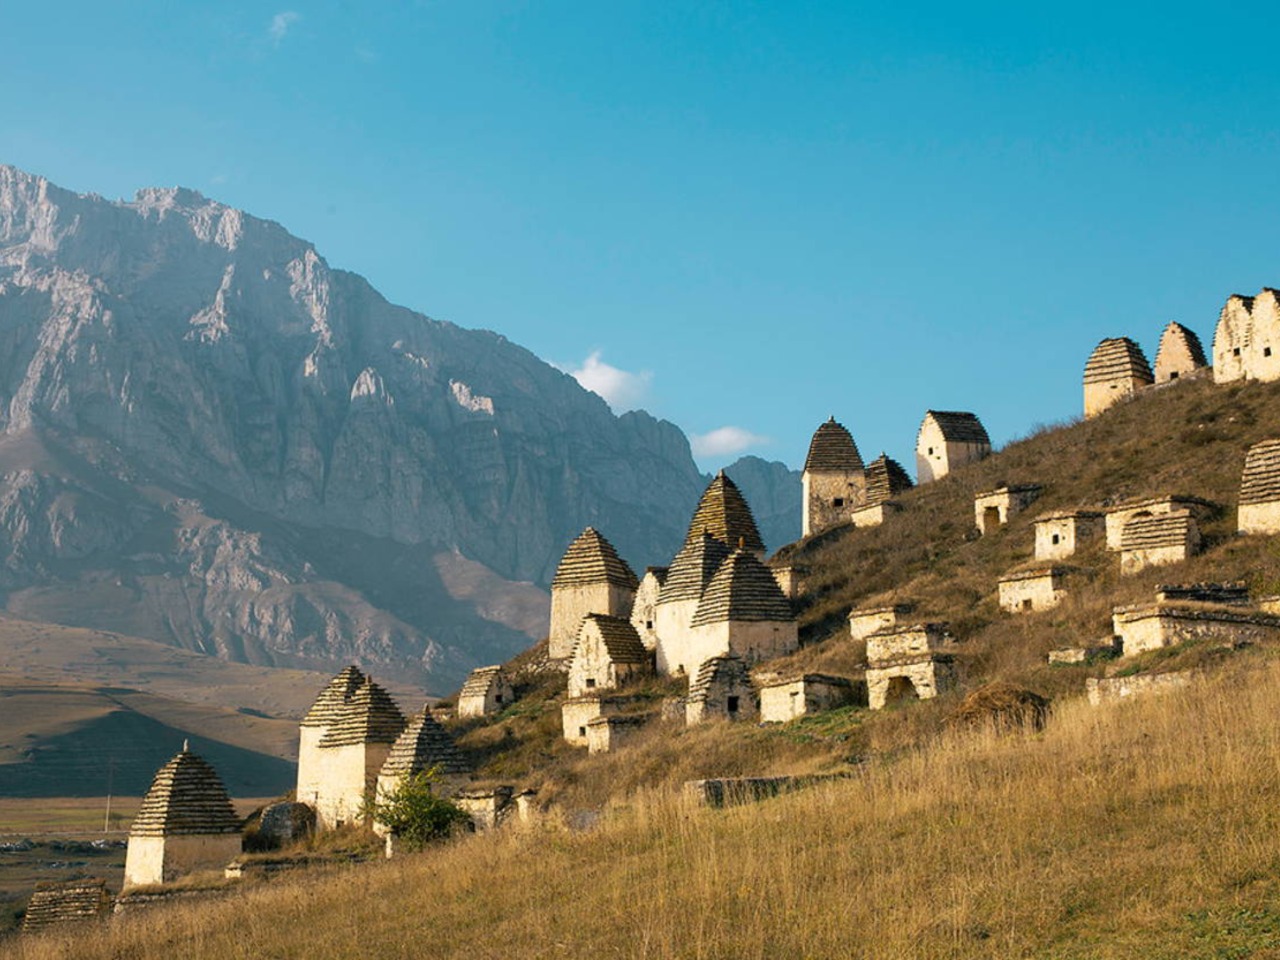 Всё великолепие Северной Осетии за один день! | Цена 10940₽, отзывы, описание экскурсии